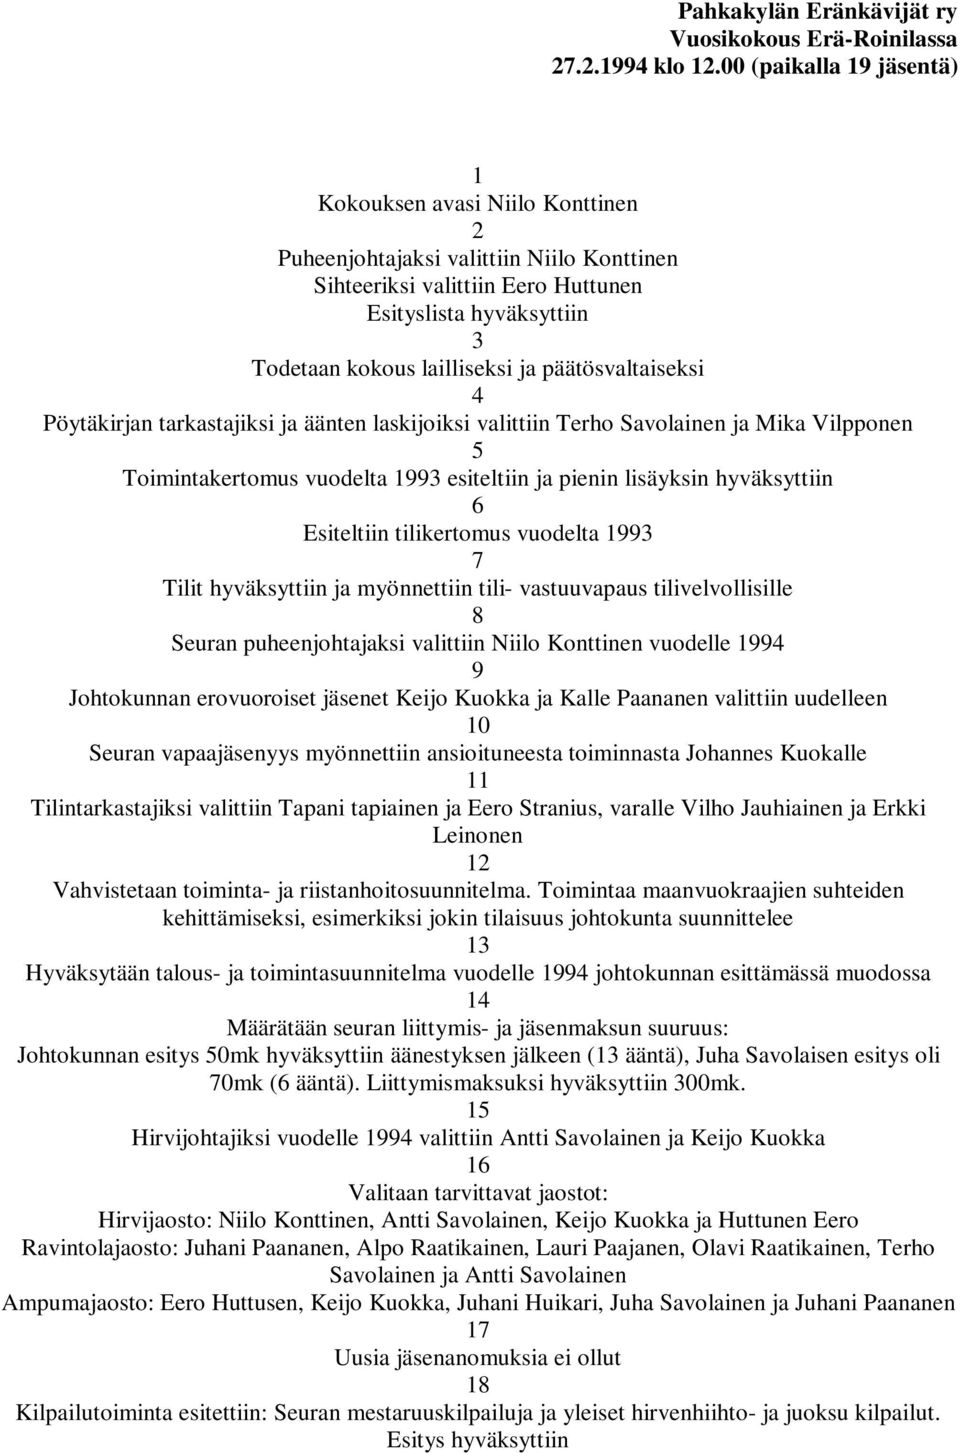 päätösvaltaiseksi 4 Pöytäkirjan tarkastajiksi ja äänten laskijoiksi valittiin Terho Savolainen ja Mika Vilpponen 5 Toimintakertomus vuodelta 1993 esiteltiin ja pienin lisäyksin hyväksyttiin 6